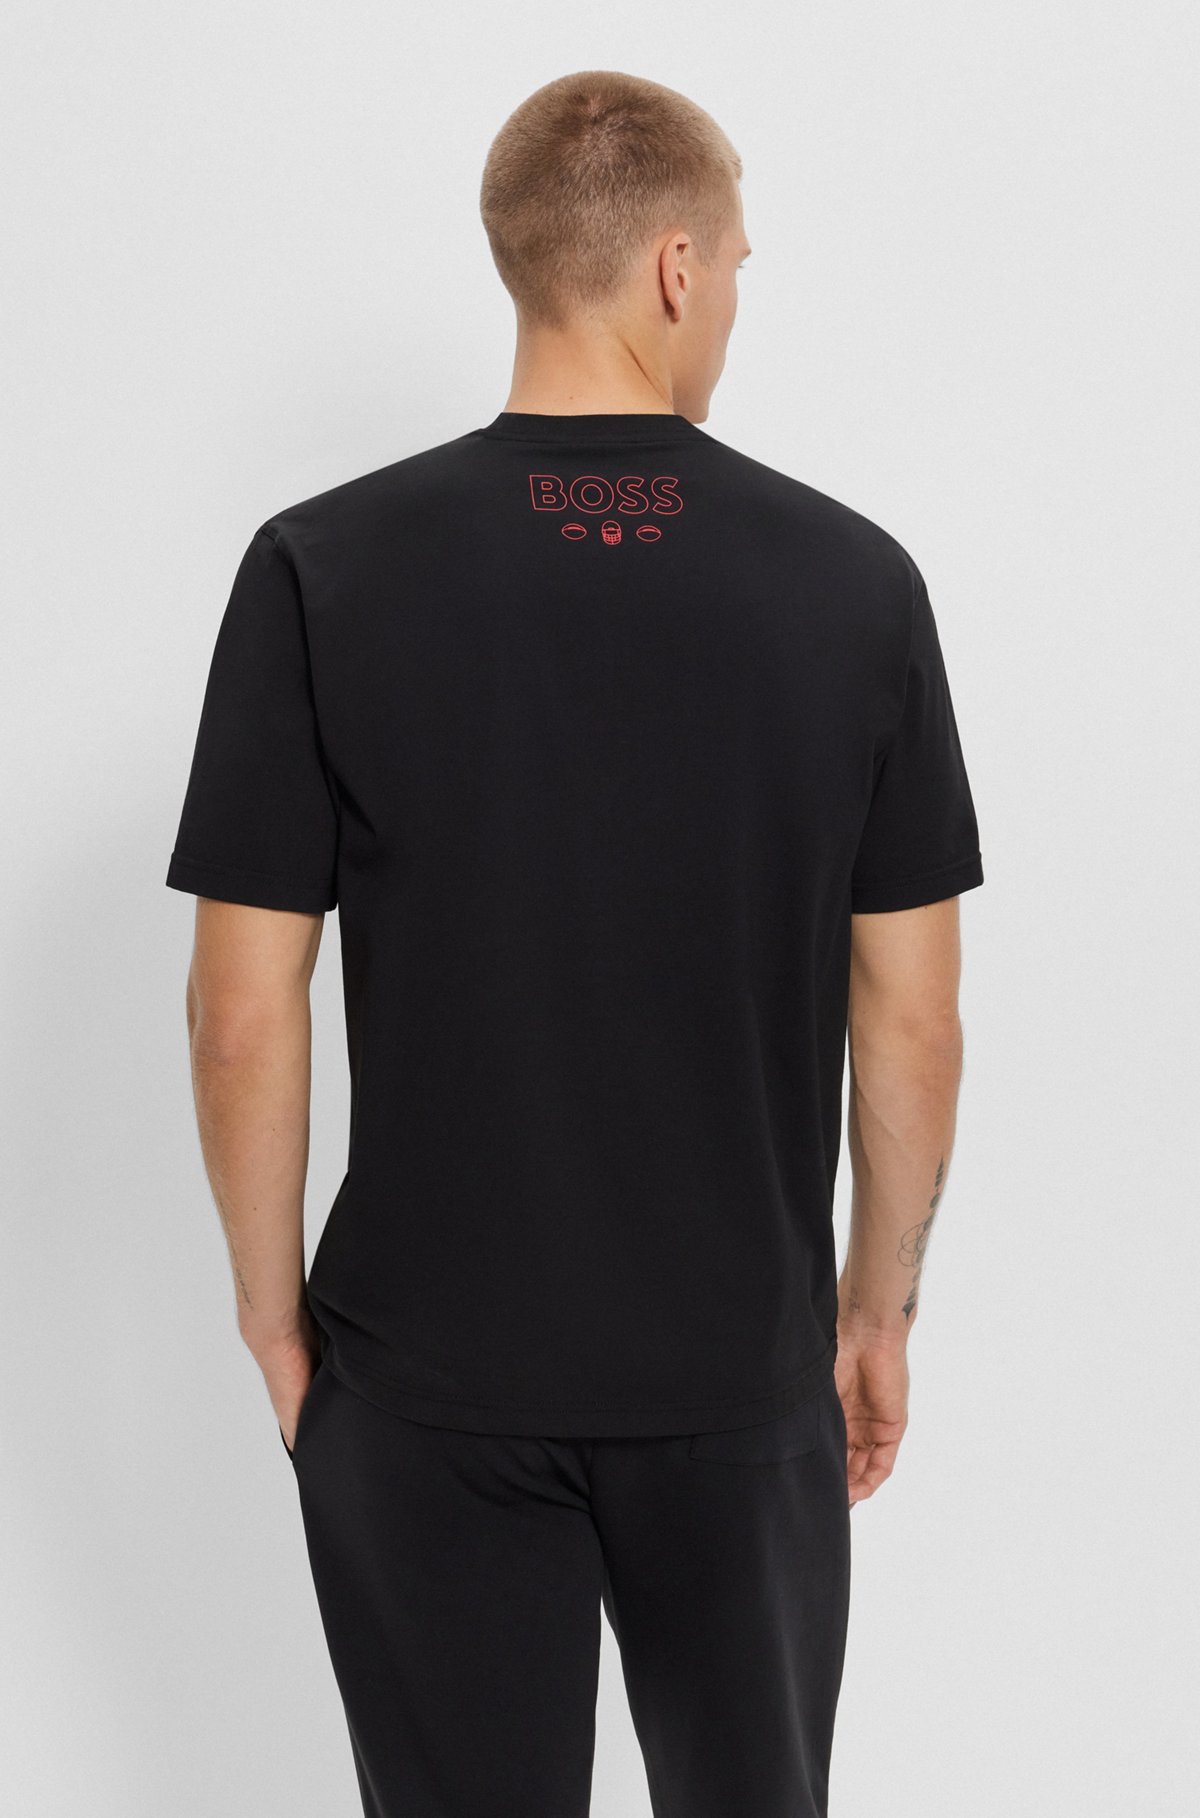  BOSS x NFL T-shirt i bomuld med stræk og fælles branding, Chiefs